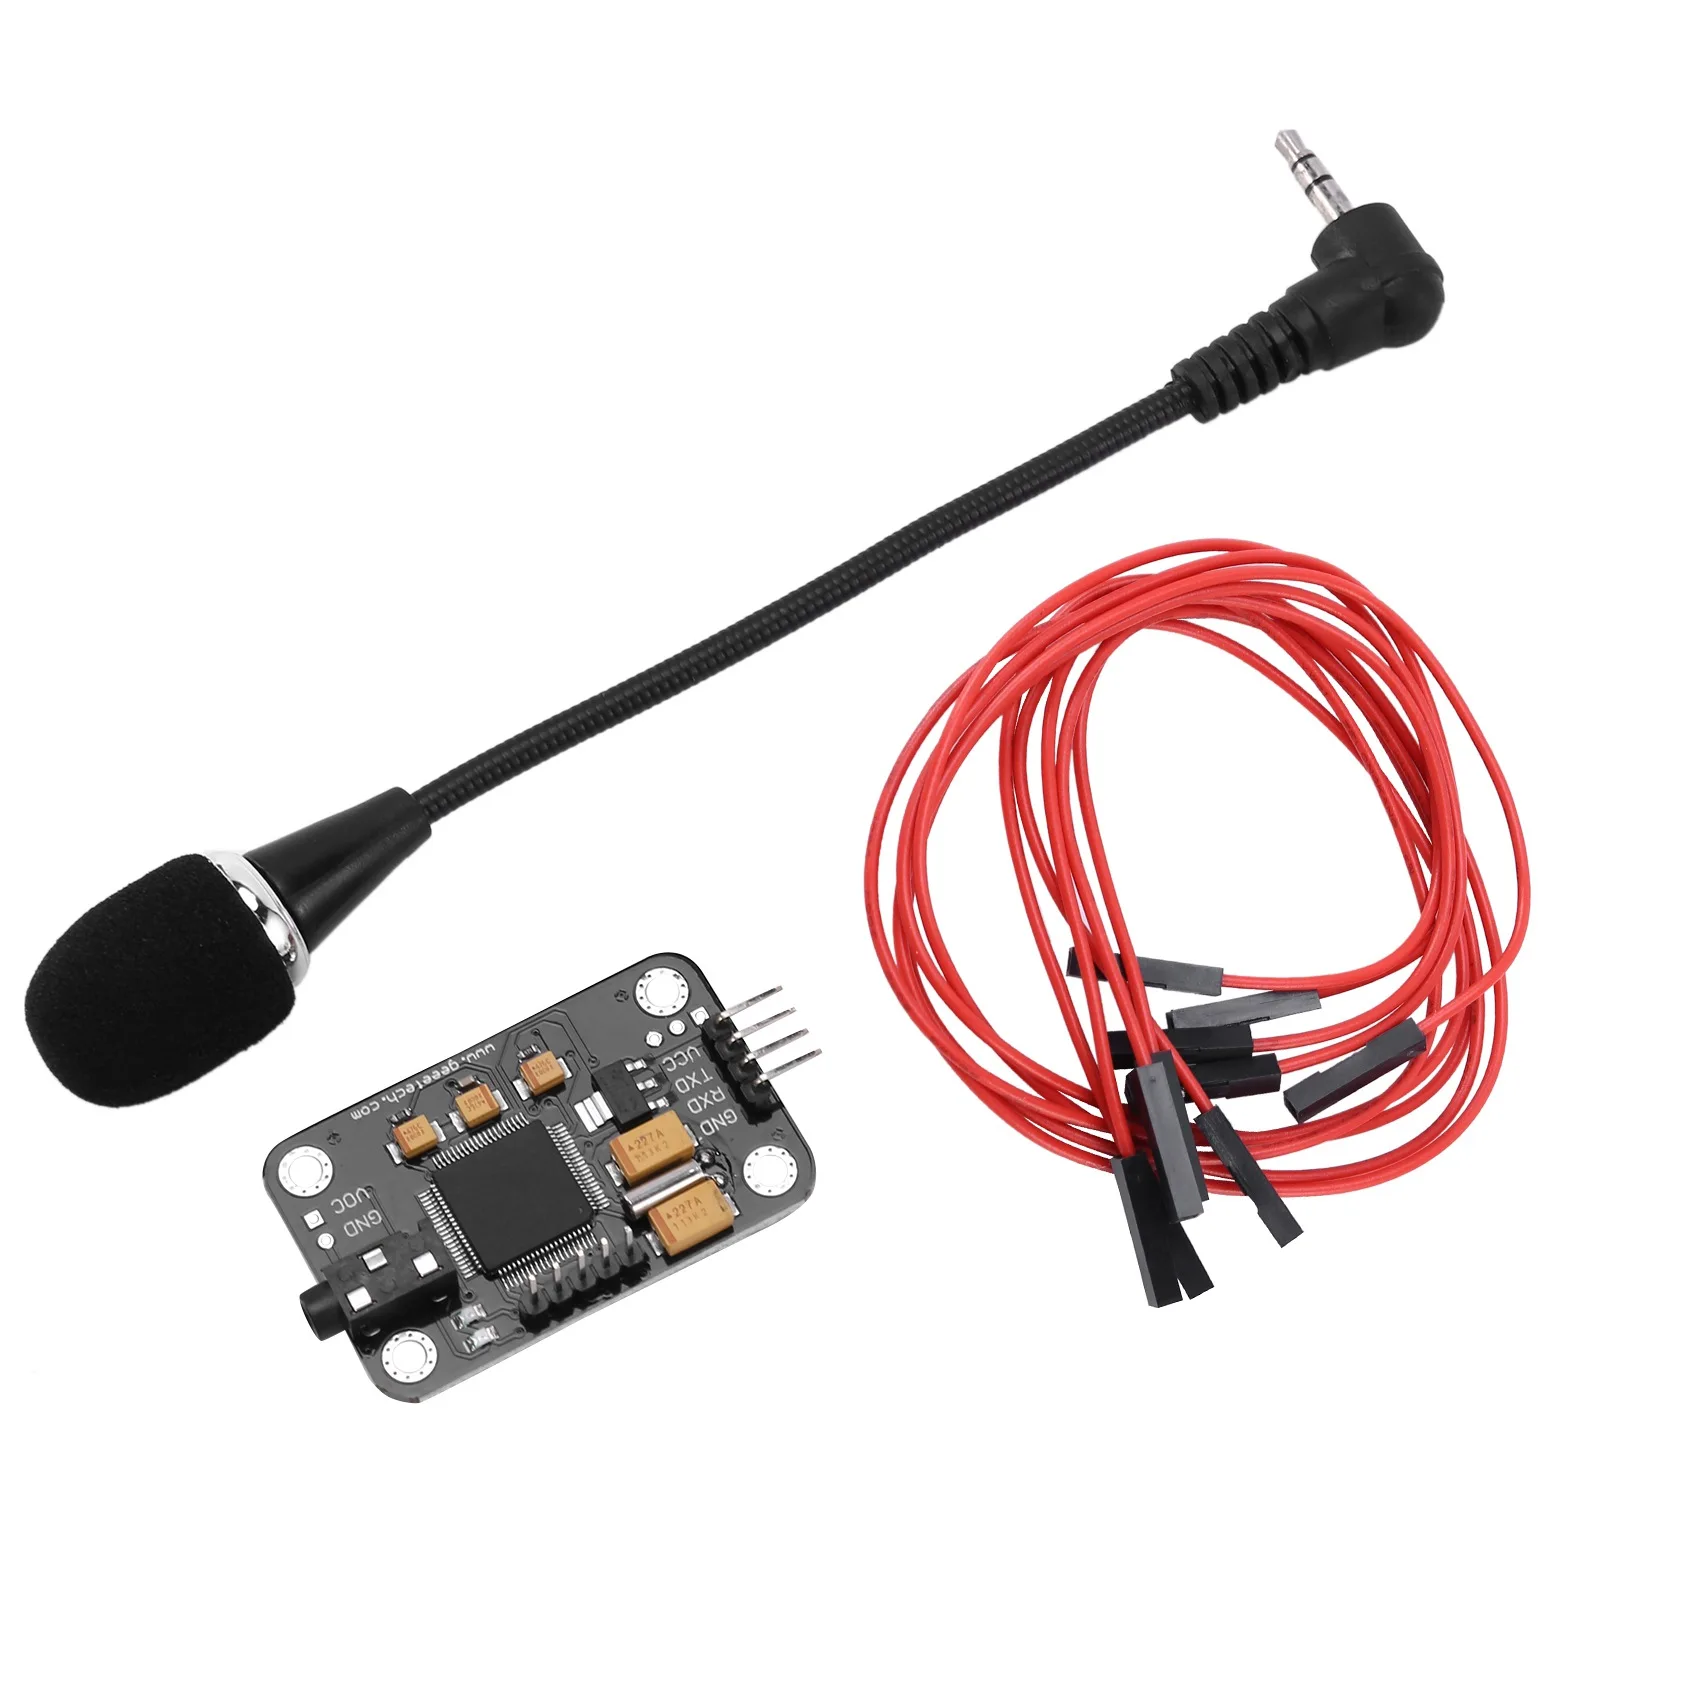 

Модуль распознавания голоса с микрофоном Dupont, плата голосового управления распознаванием речи, совместима с Arduino